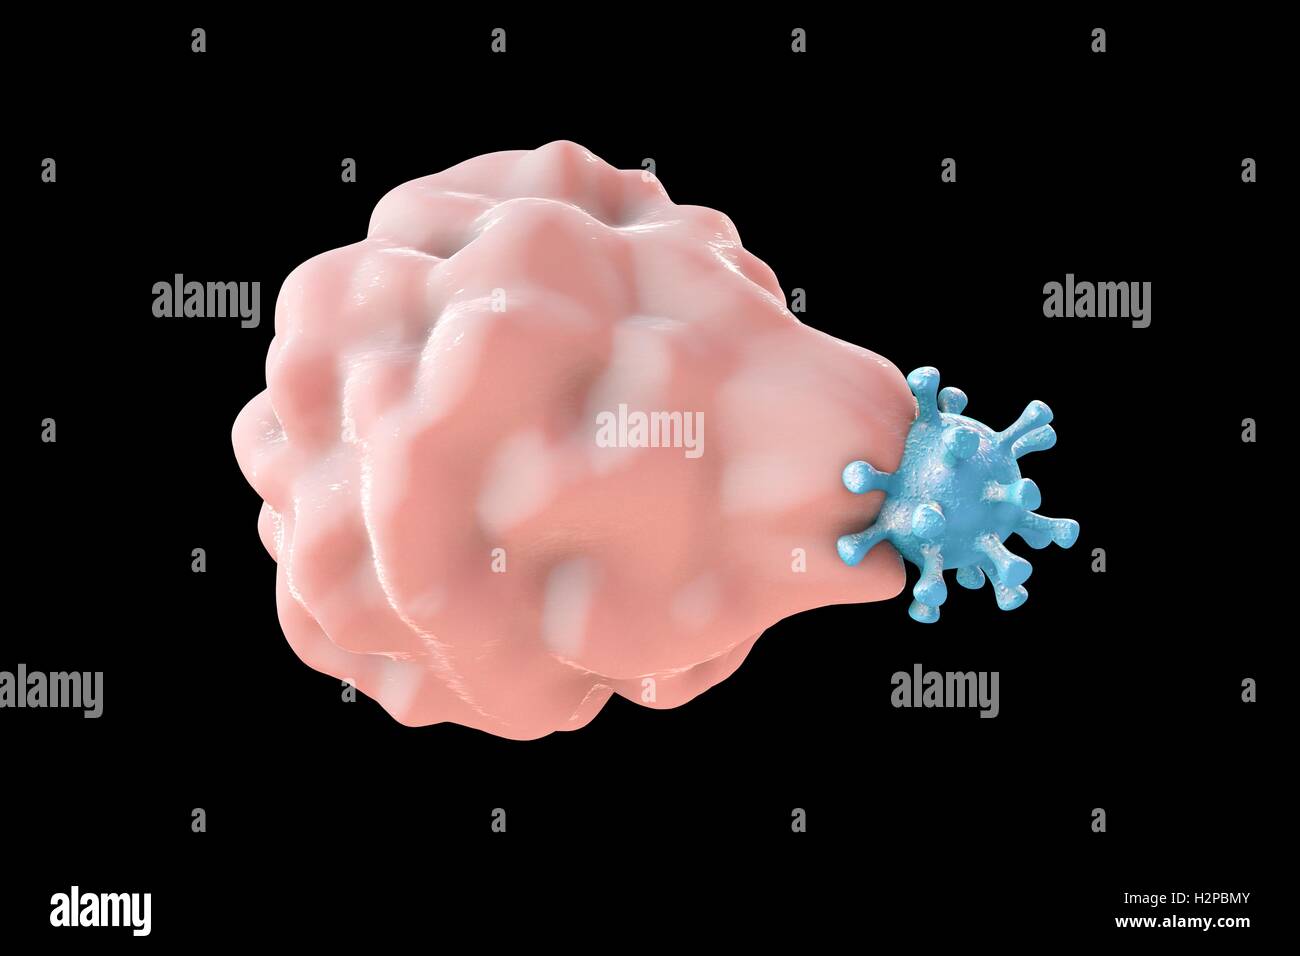 Computer Bild der Phagozytose-ähnliche Aufnahme eines Virus von einer Wirtszelle; die erste Stufe der viralen Infektion der Wirtszelle. Diese Art von viralen Eintrag ist charakteristisch für einige Viren, wie Herpes-Simplex-Virus, die sowohl professionelle infizieren können Stockfoto